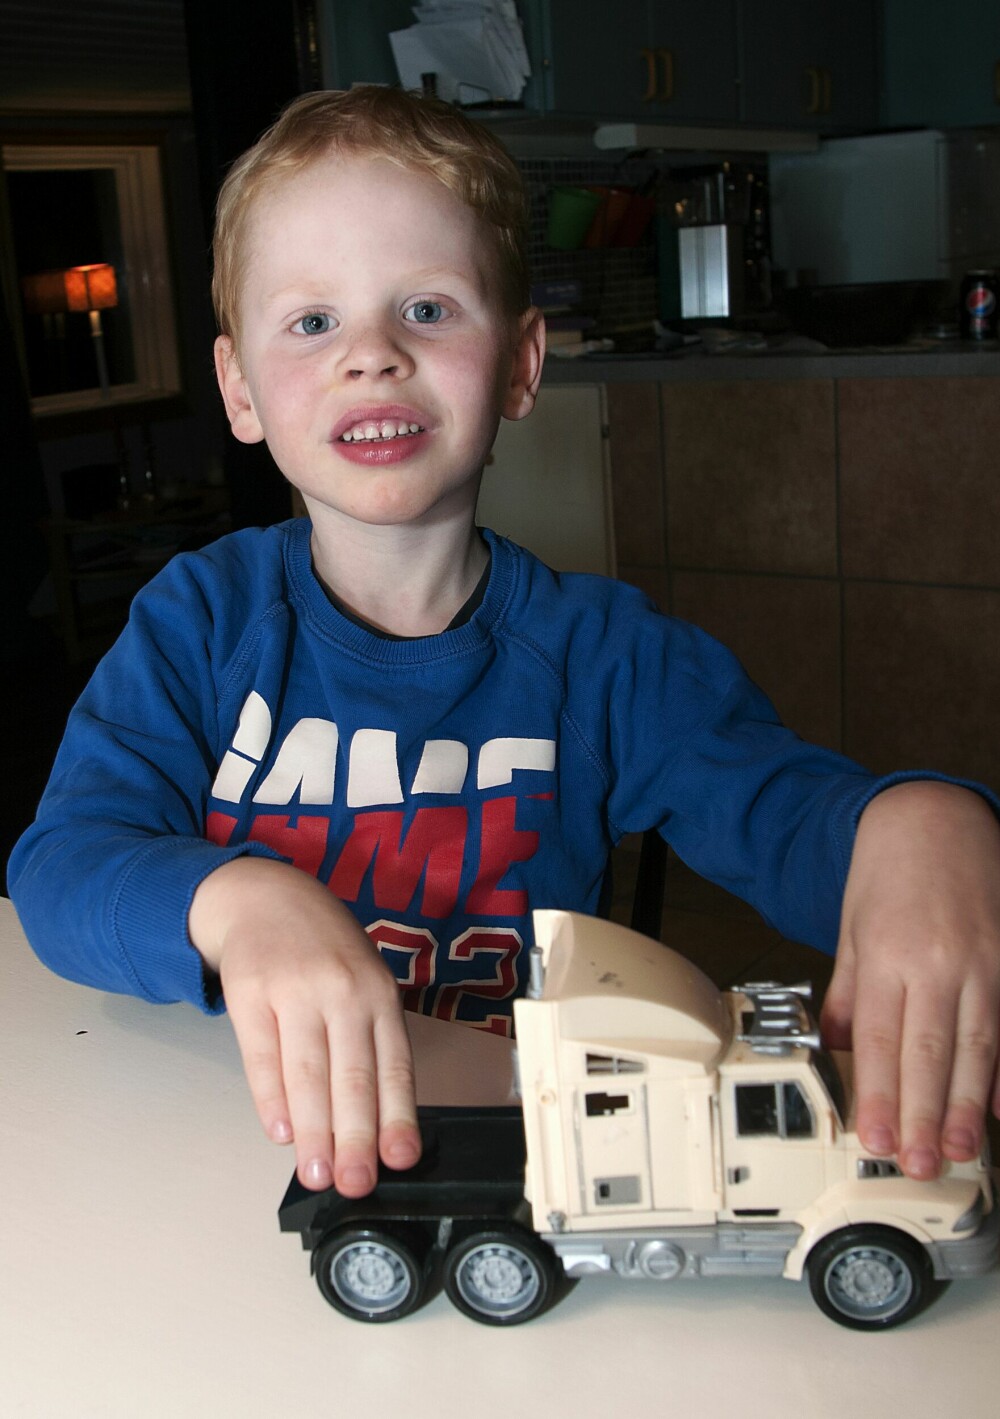 <b>FREMTIDS-PLANER:</b> Liam elsker biler og skal bli bilmekaniker når han blir stor.